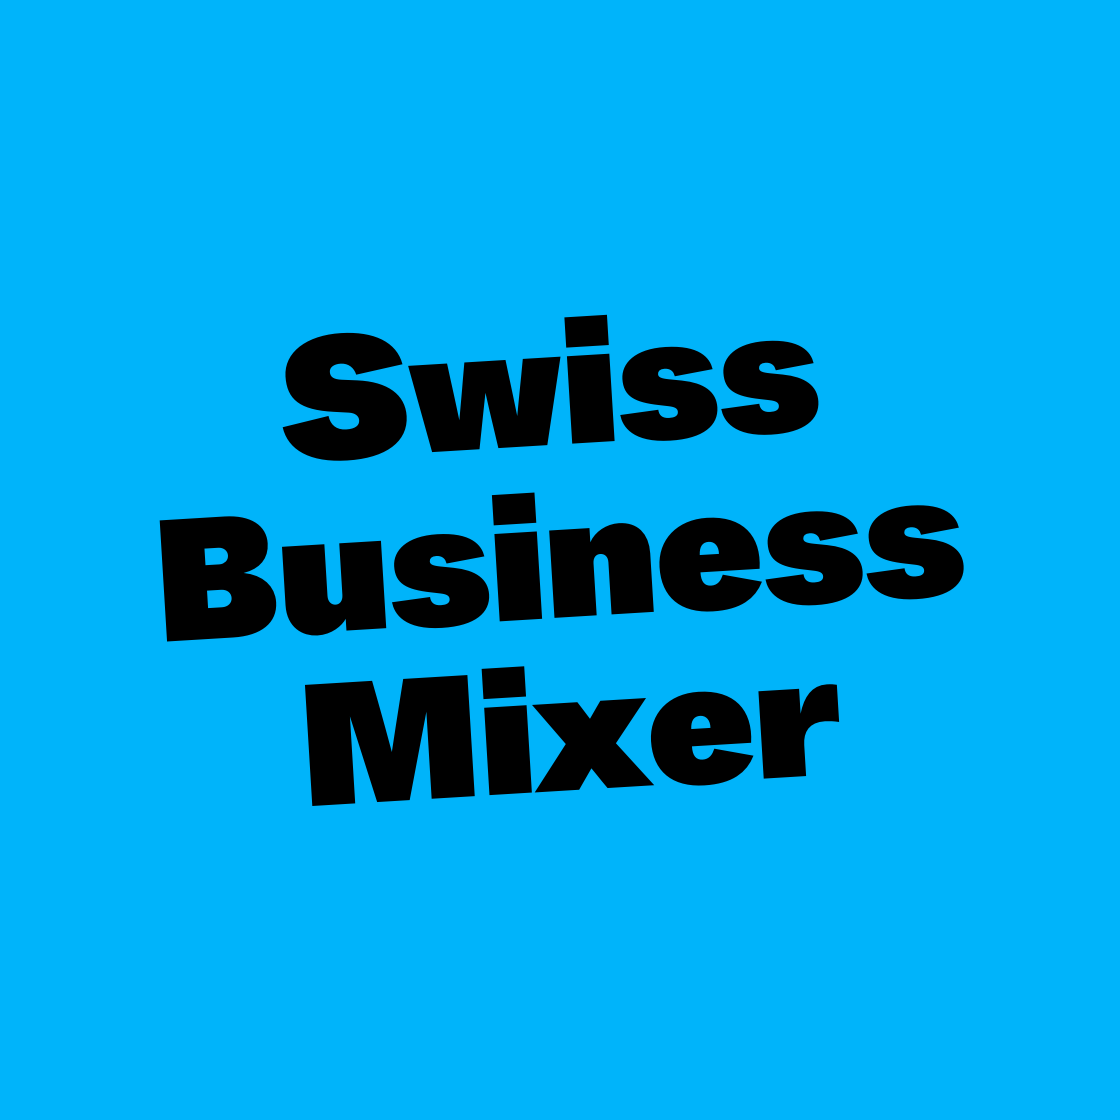 Swiss Business Mixer